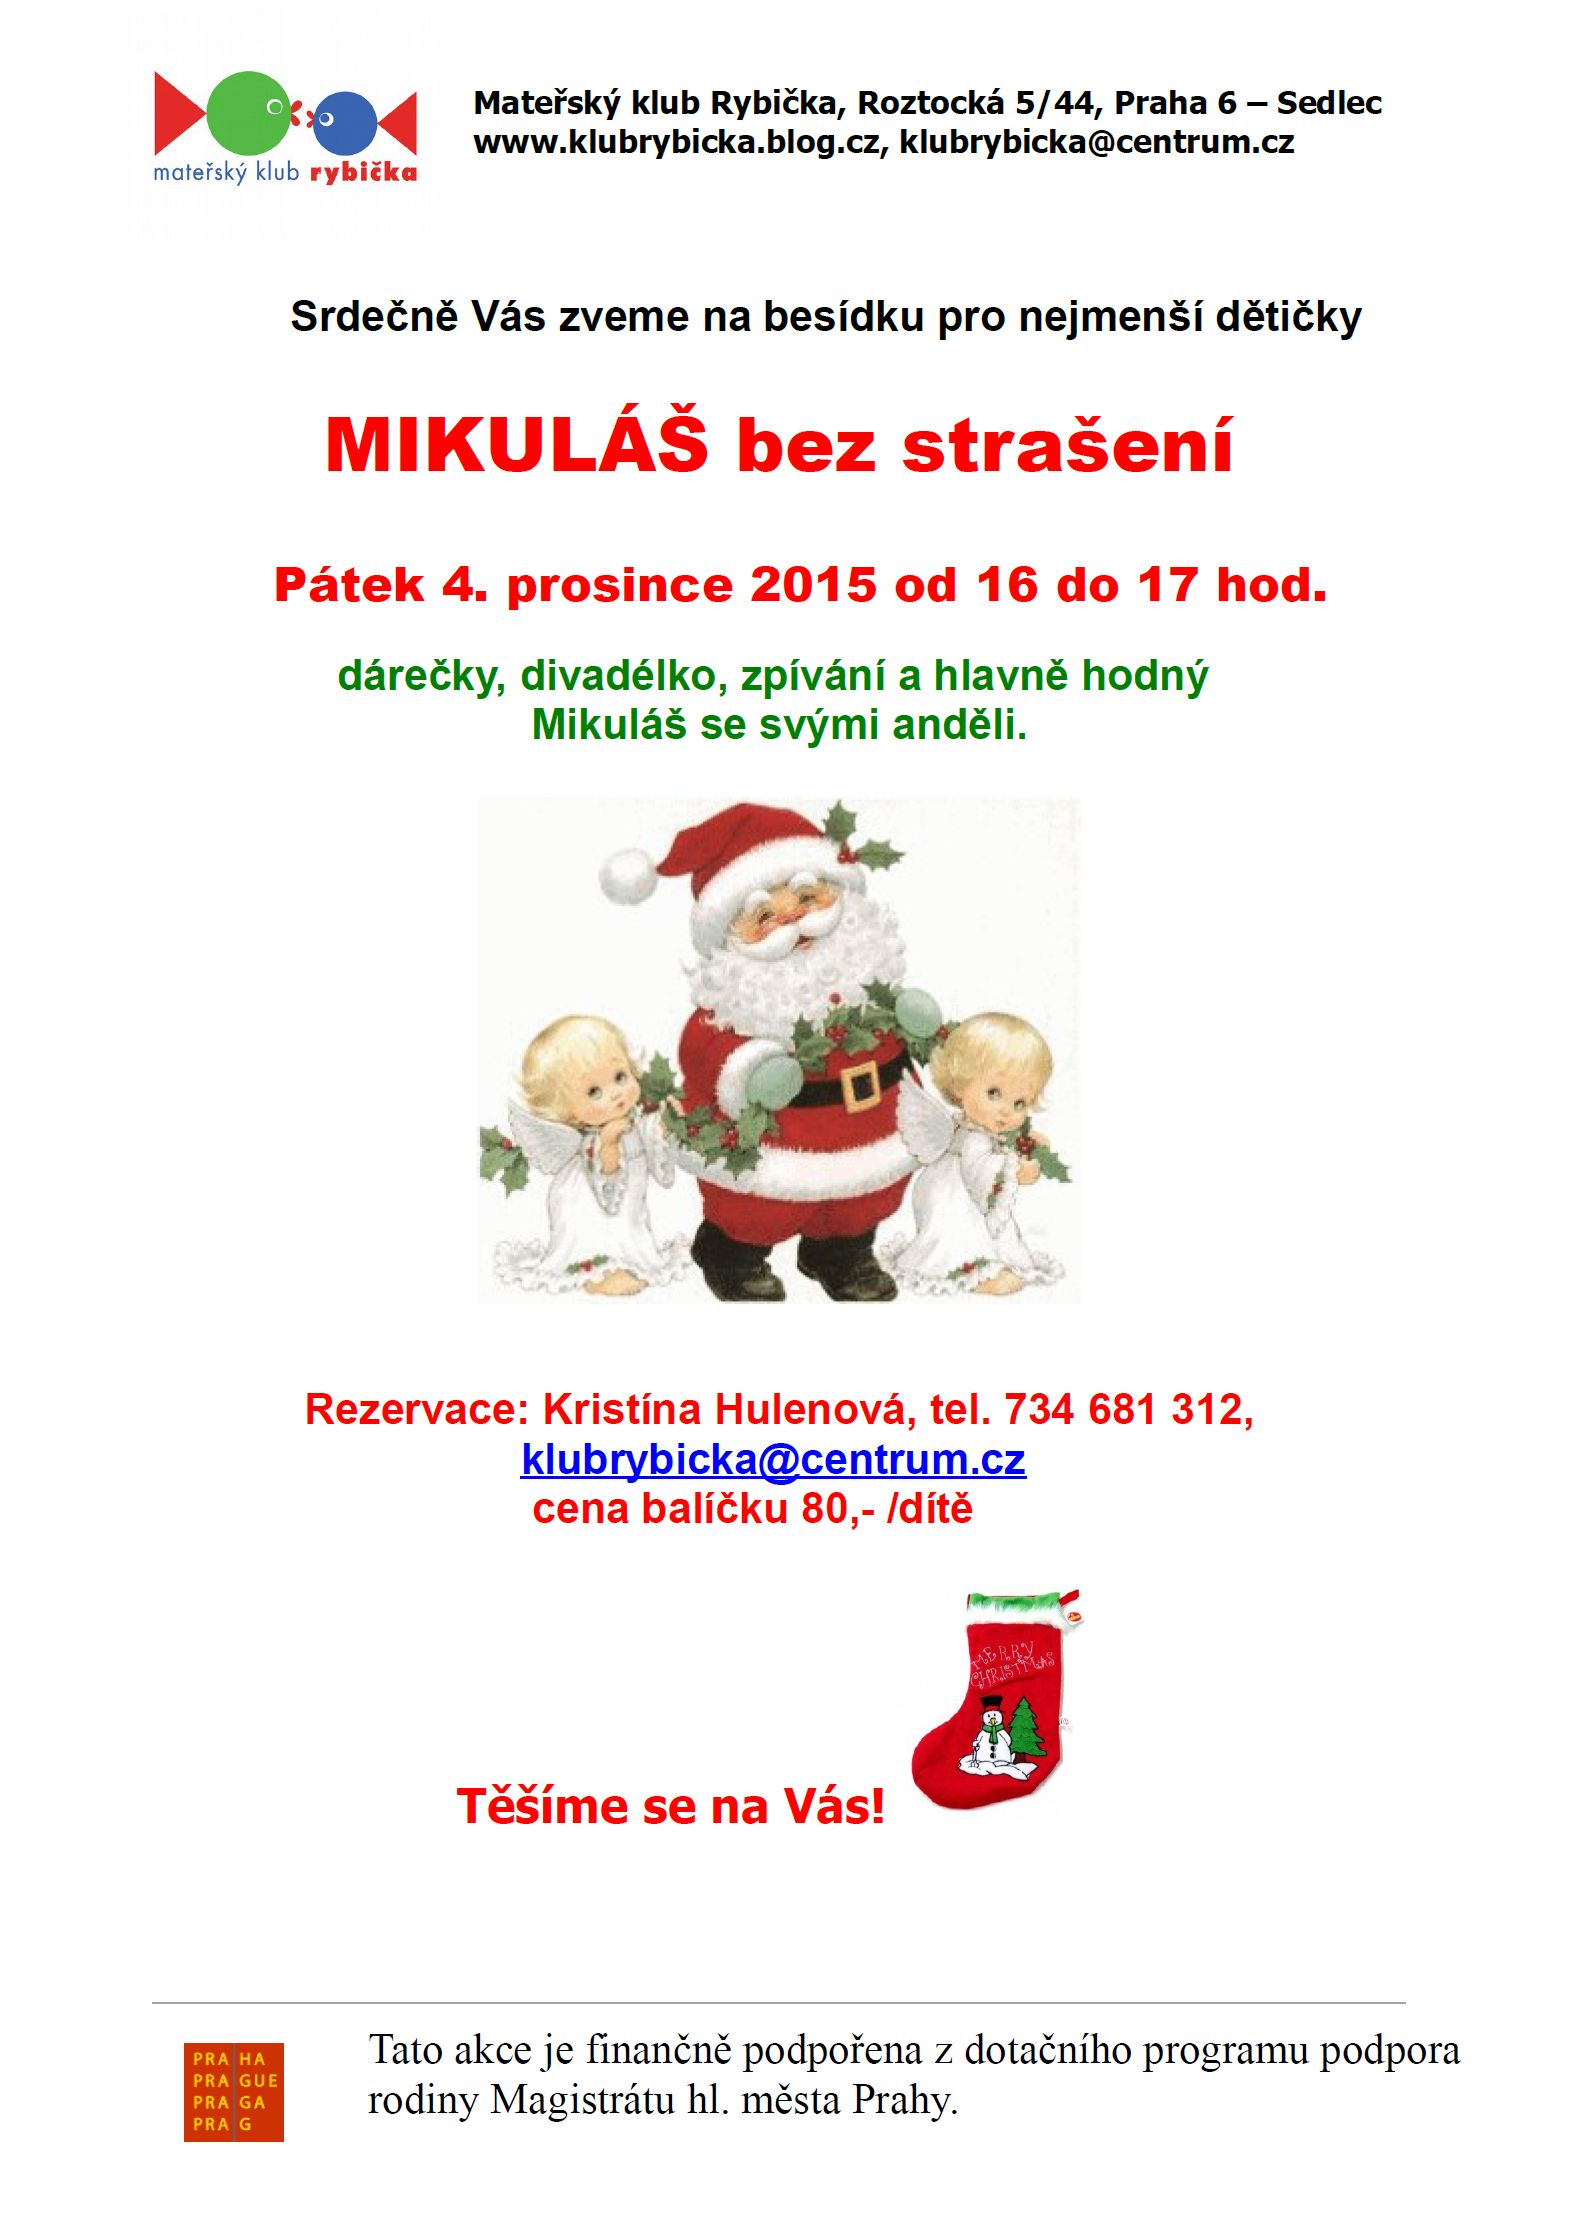 Mikulášská besídka bez strašení MK Rybička, pá 4.12.2015